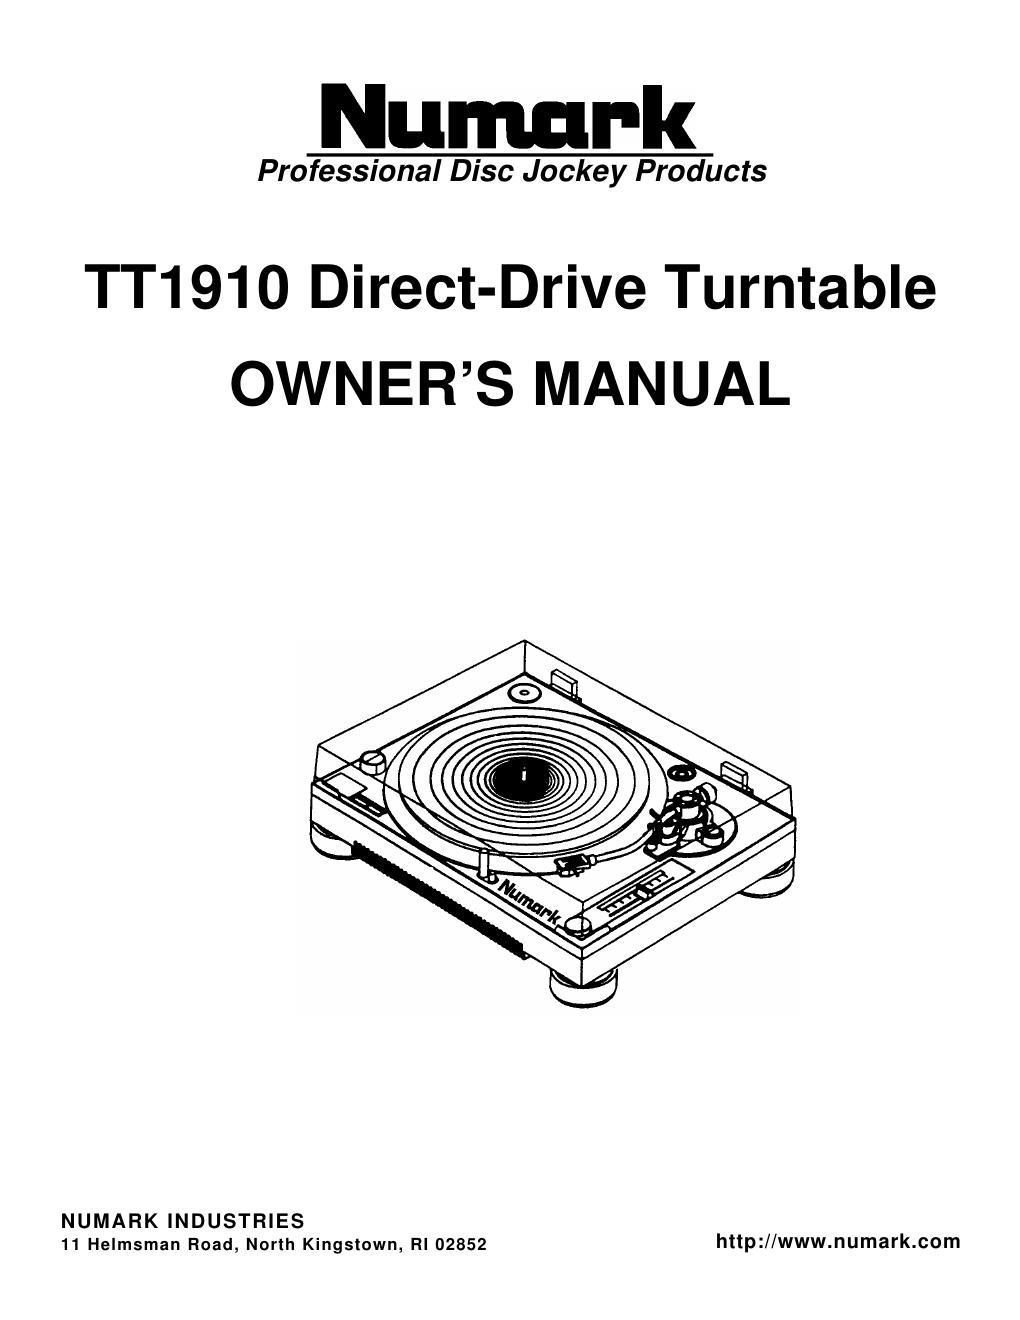 numark tt 1910 owners manual